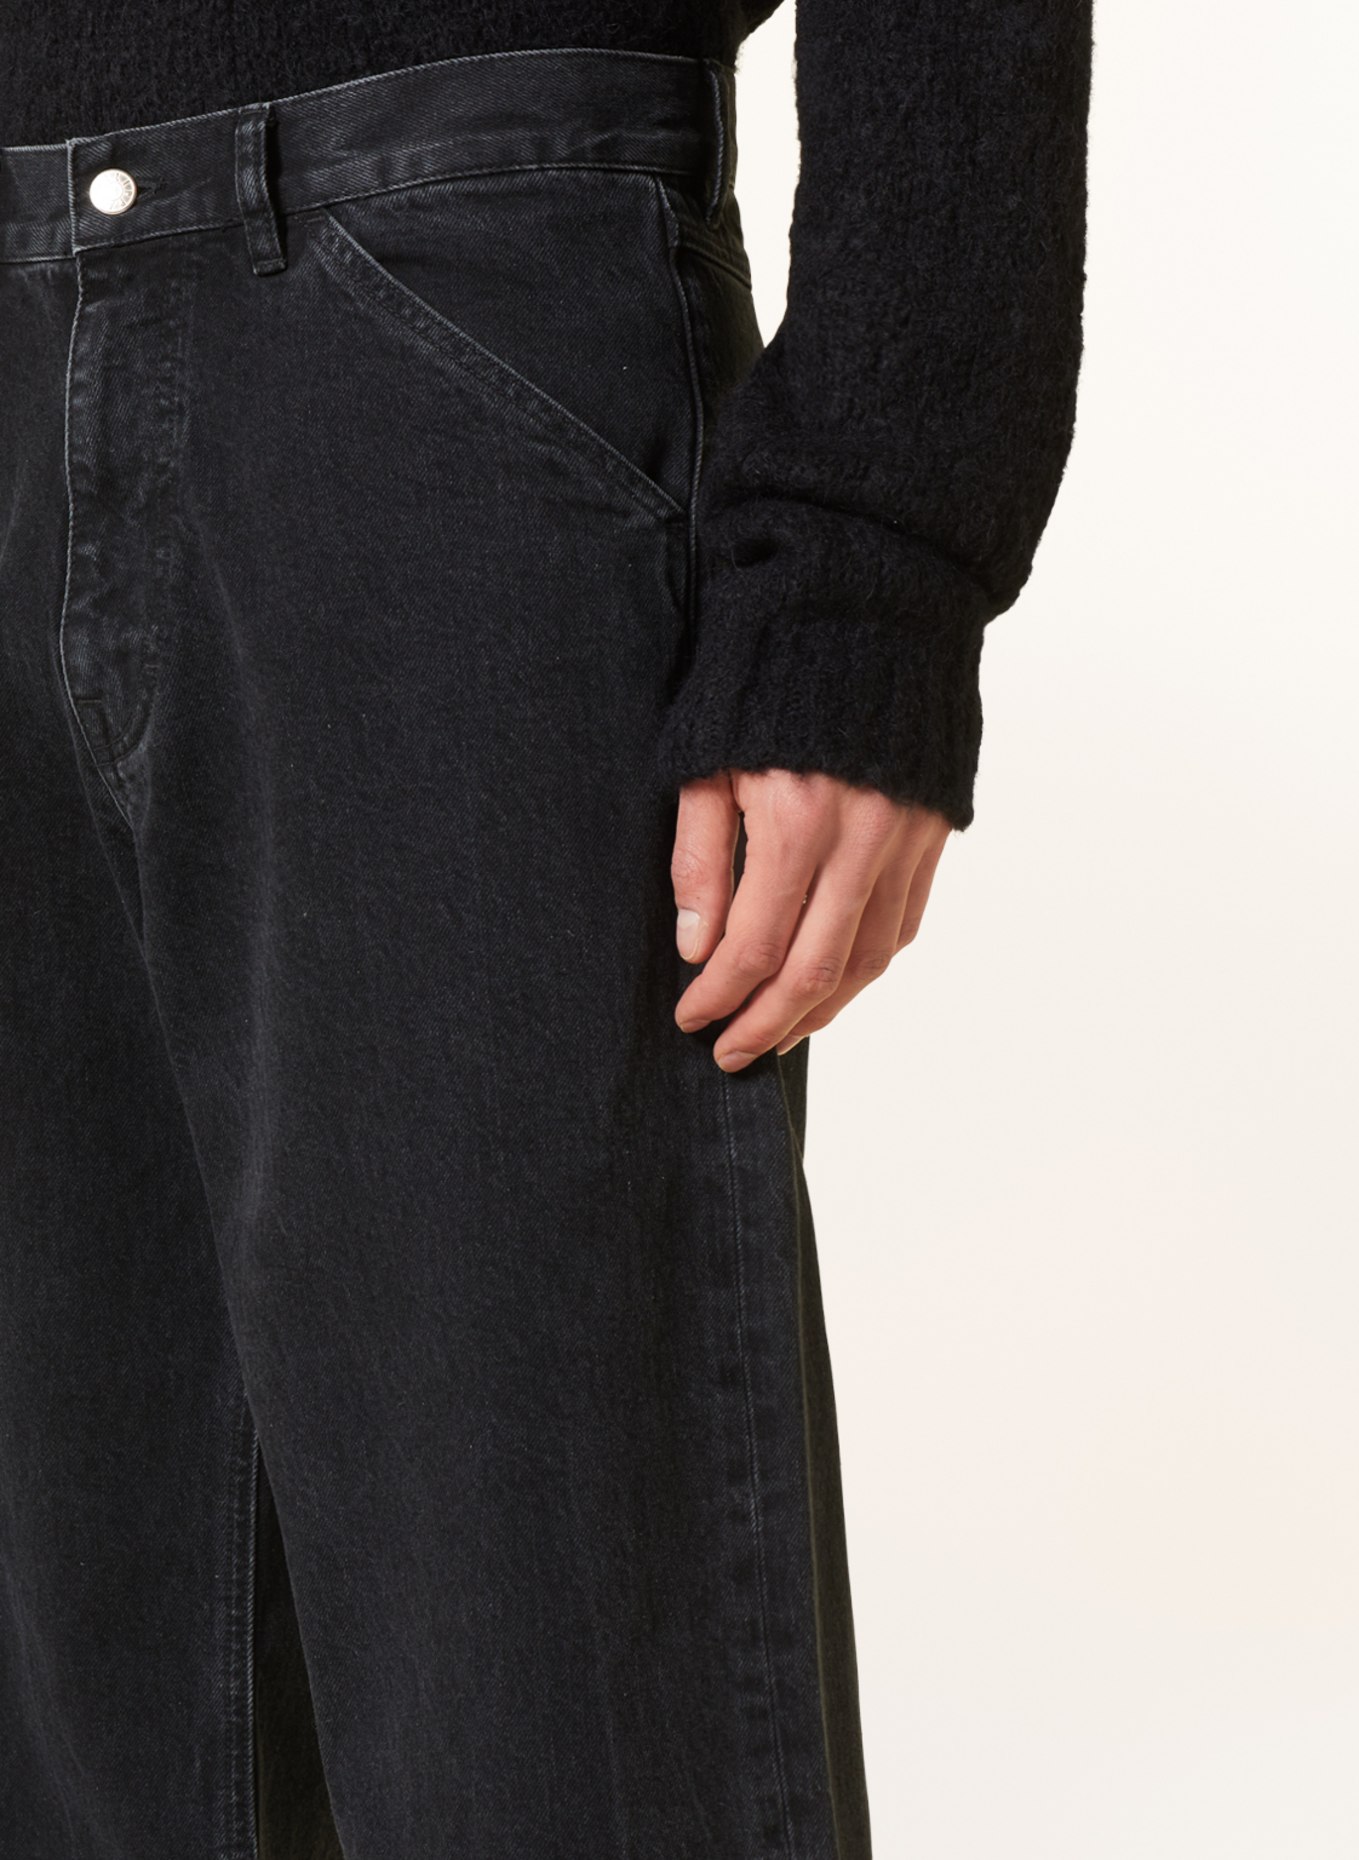 Filippa K Jeans regular fit, Color: 9897 Charcoal Black (Image 5)